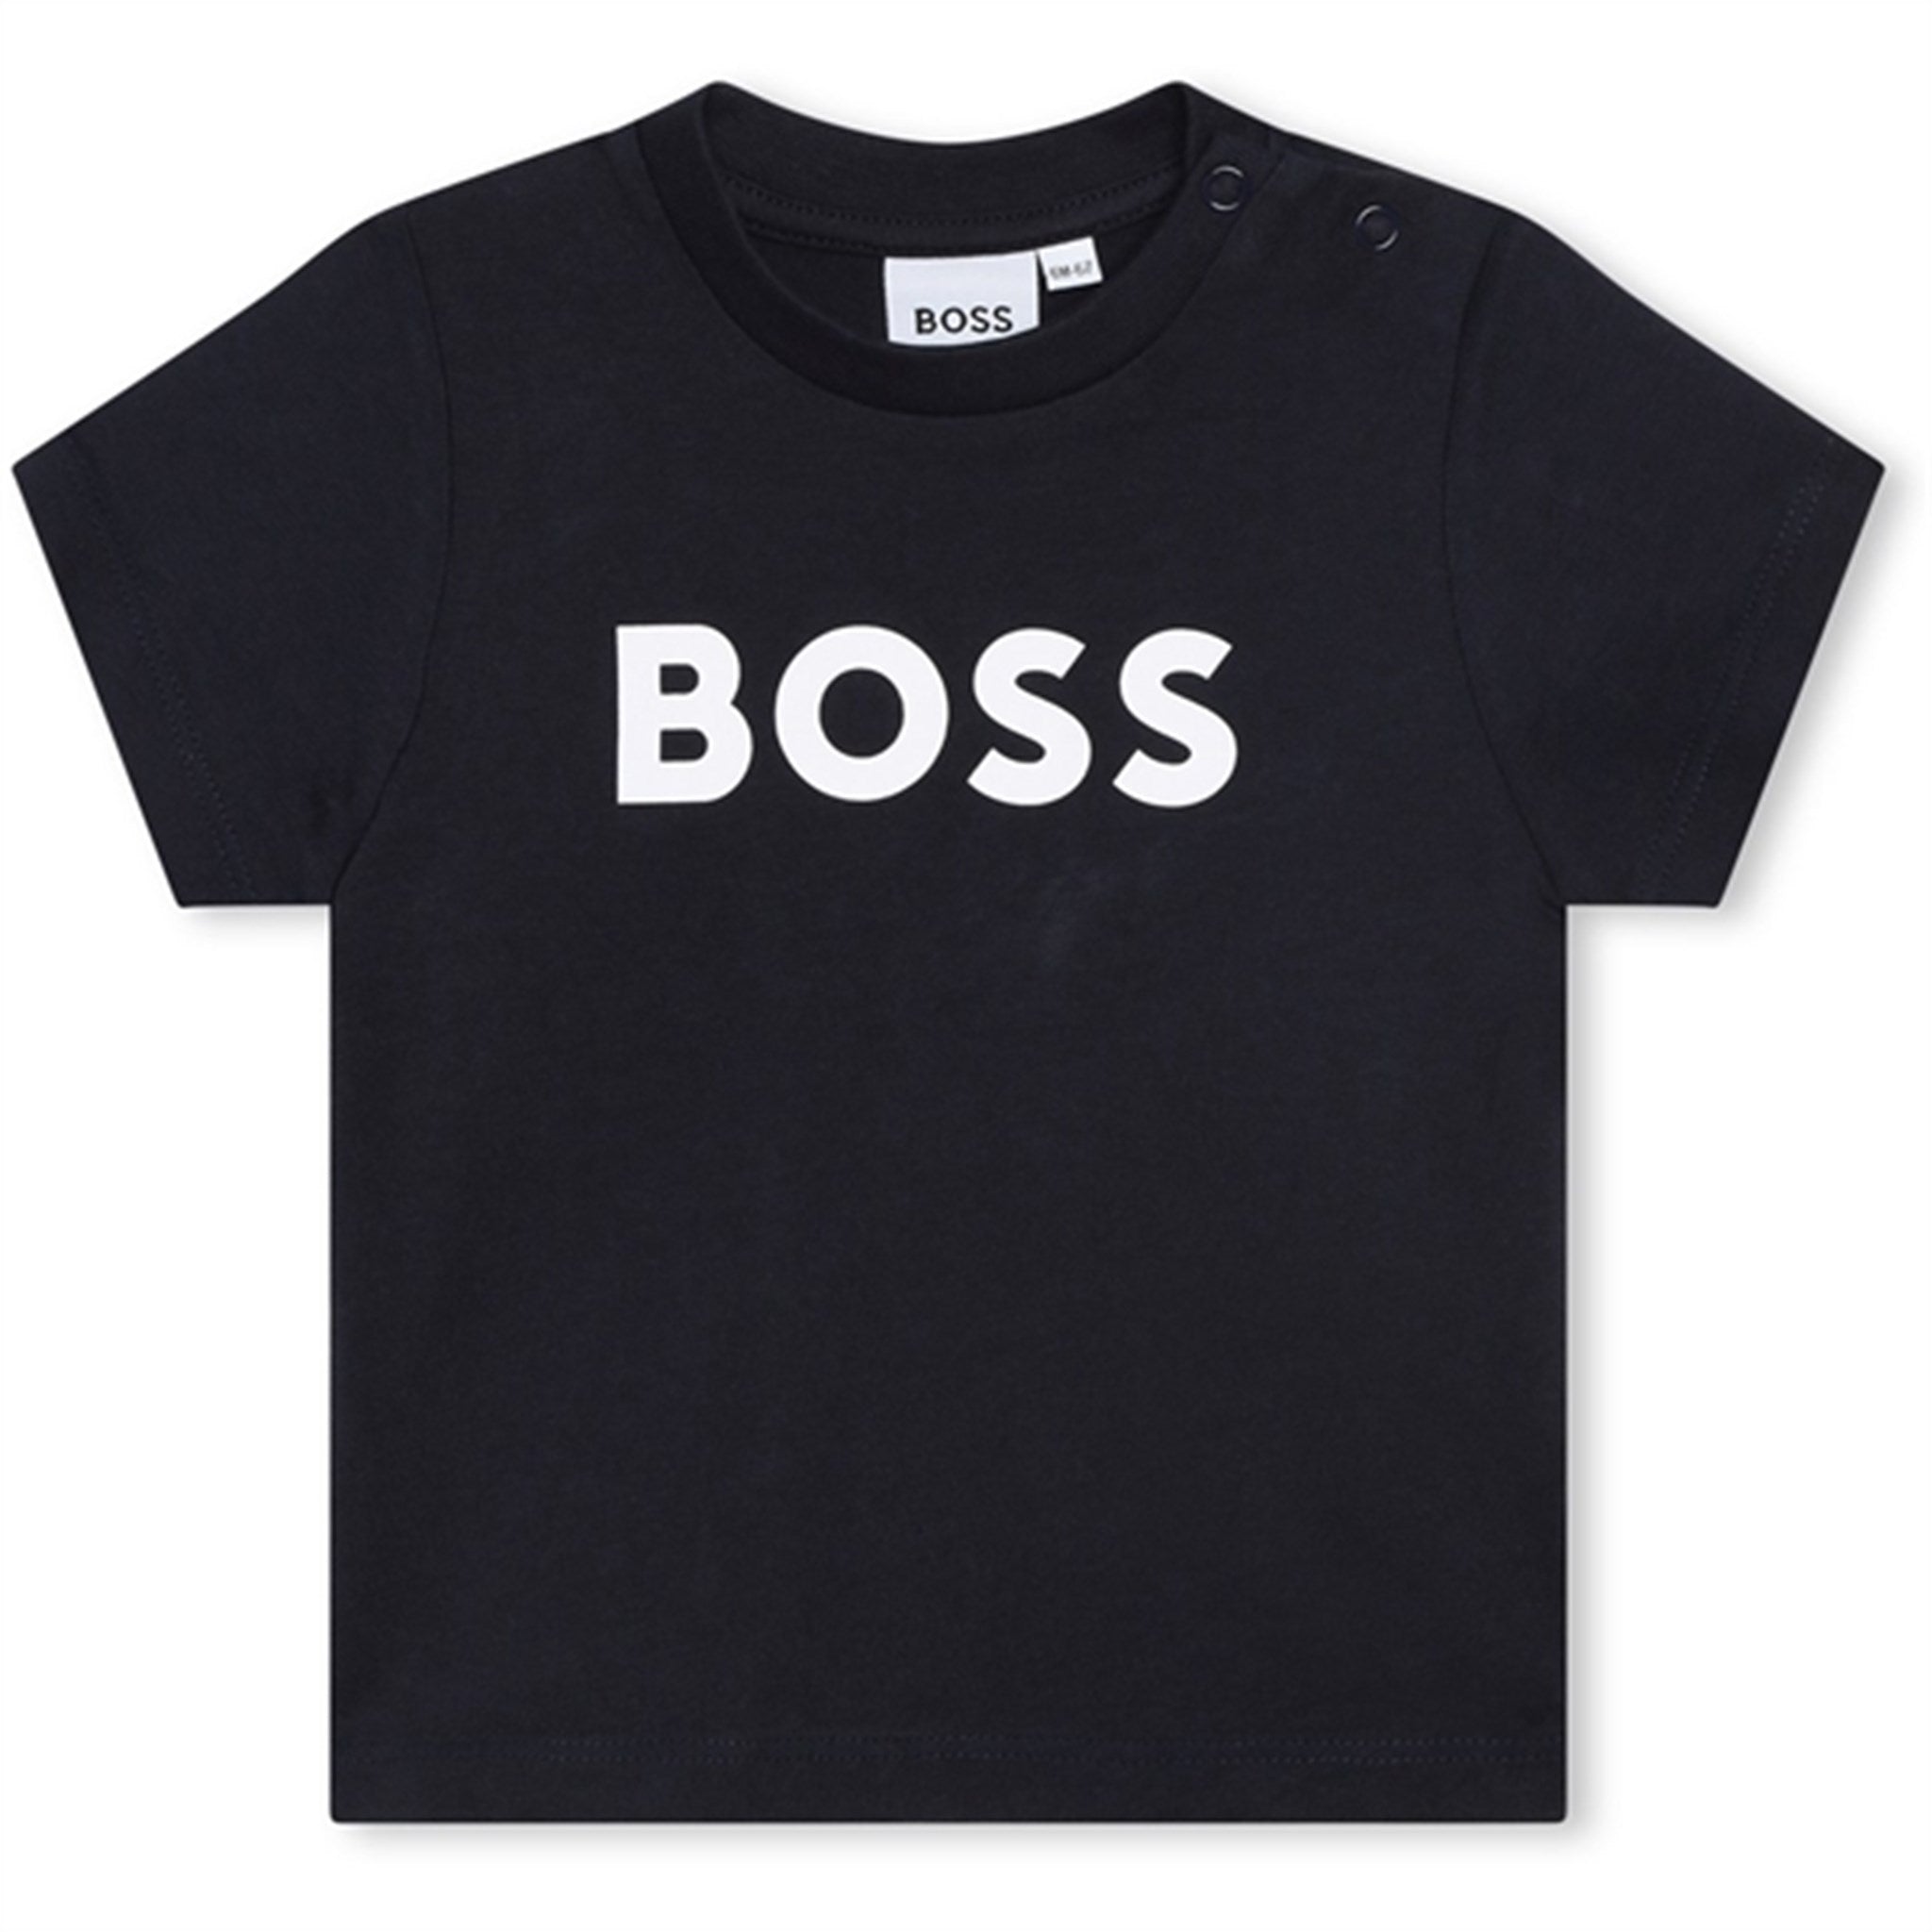 Hugo Boss Baby T-shirt Navy